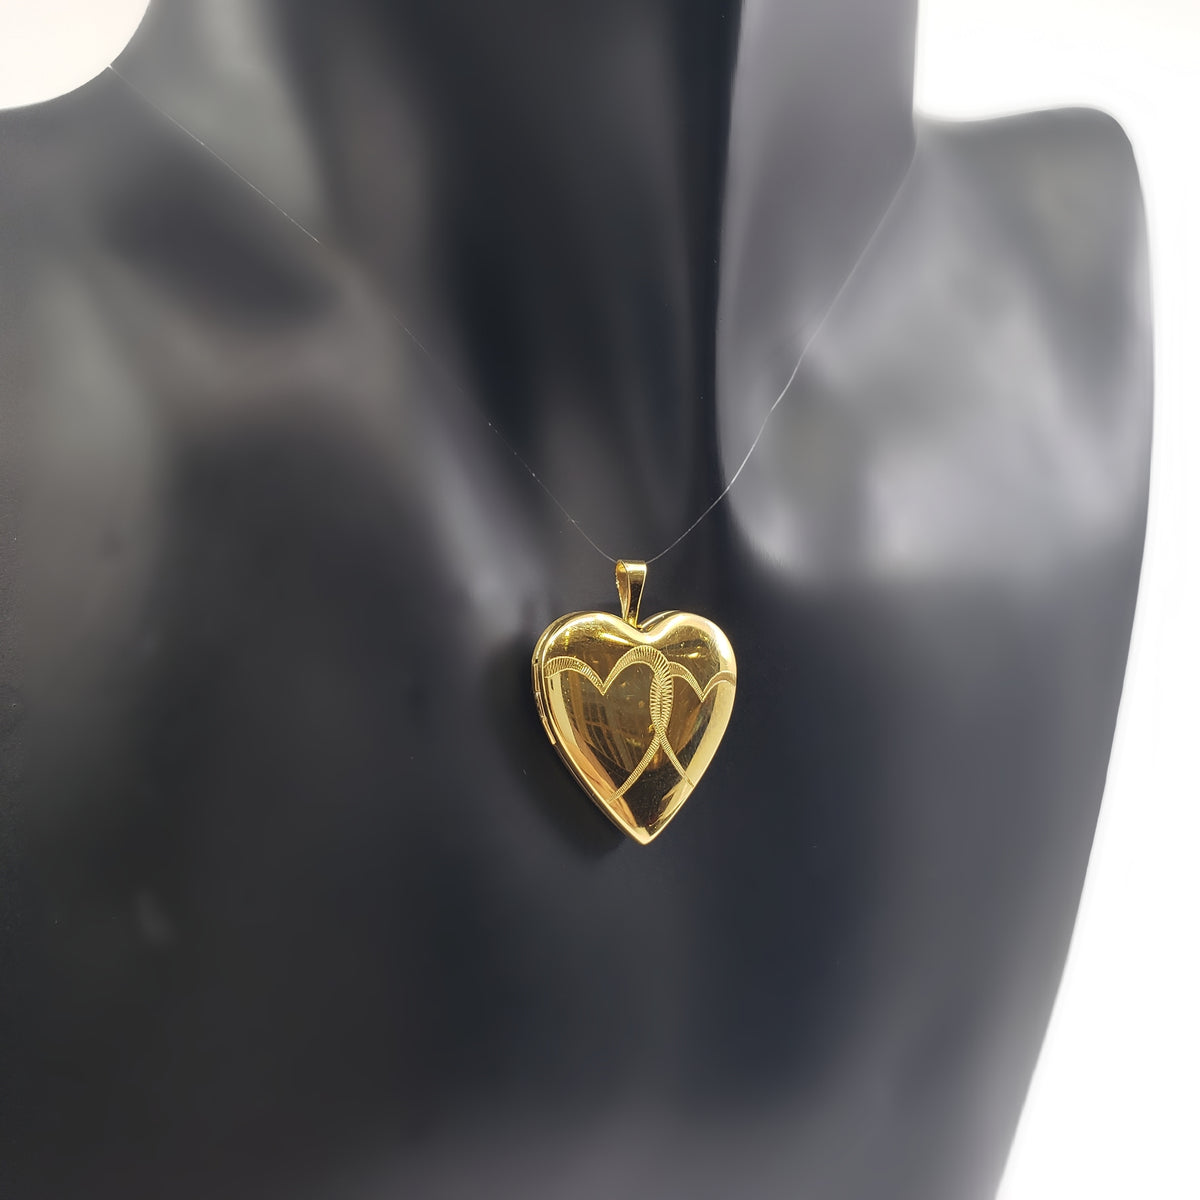 Relicario en forma de corazón de plata de ley 925 chapado en oro con diseño de corazones grabados - 21 mm x 20 mm